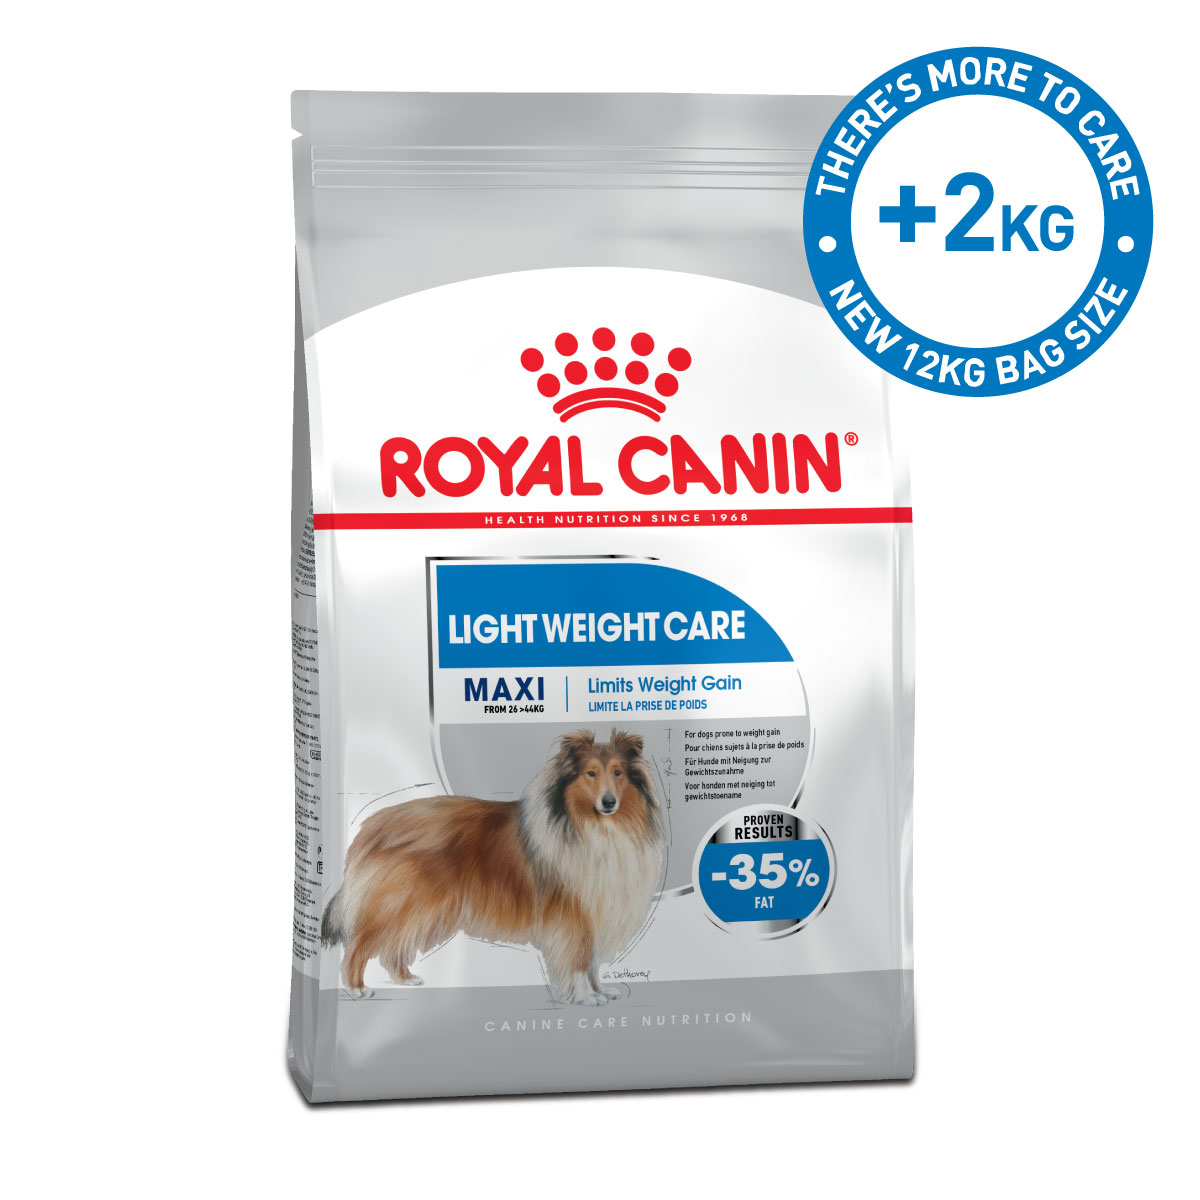 ROYAL CANIN LIGHT WEIGHT CARE MAXI Trockenfutter für zu Übergewicht neigenden Hunden 12kg von Royal Canin